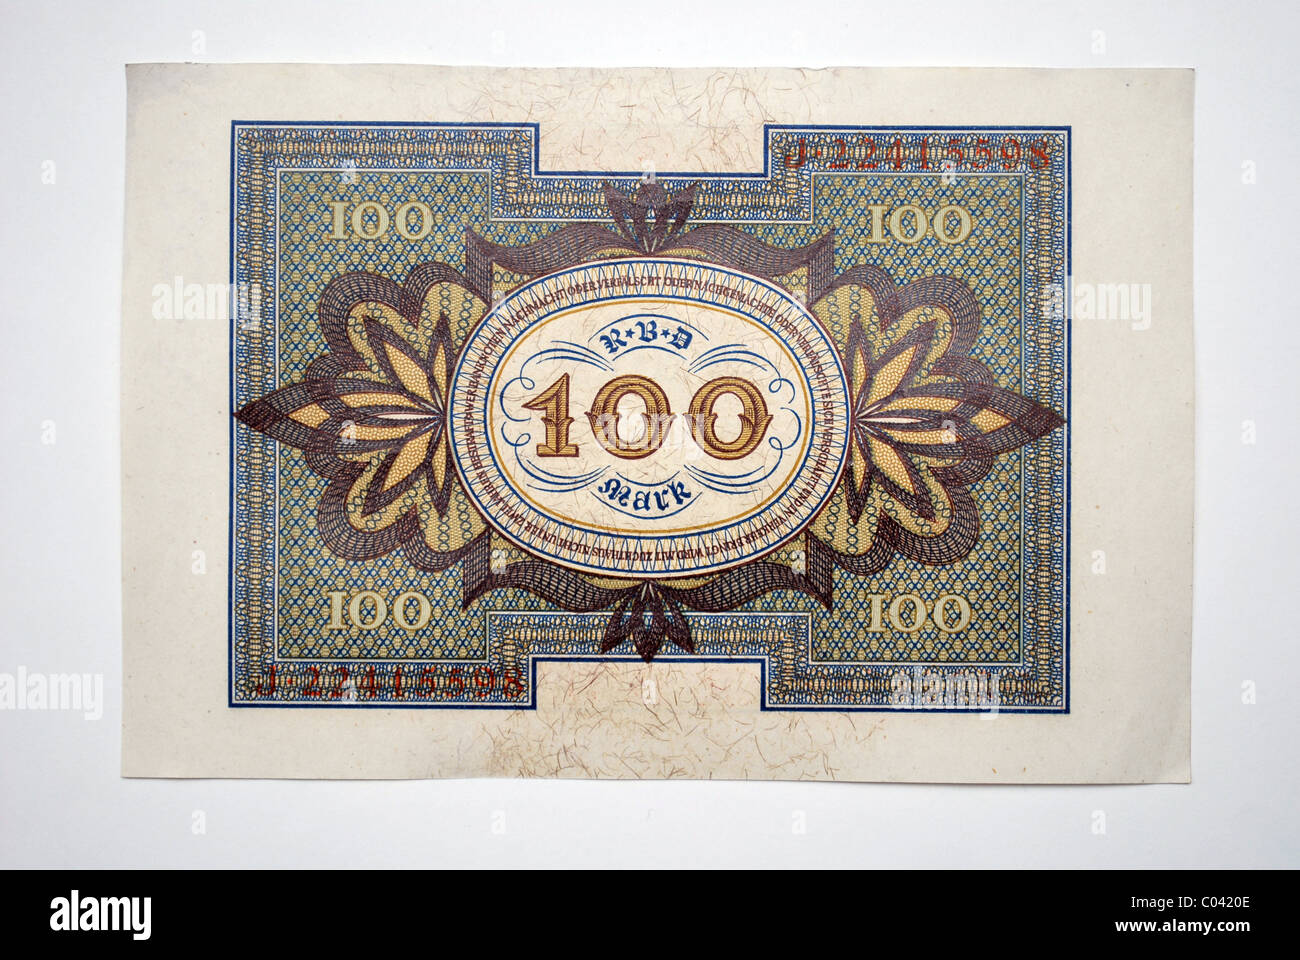 Le papier-monnaie allemande, une centaine de 'Deutsche Reichsmark' à partir de 1920. Banque D'Images